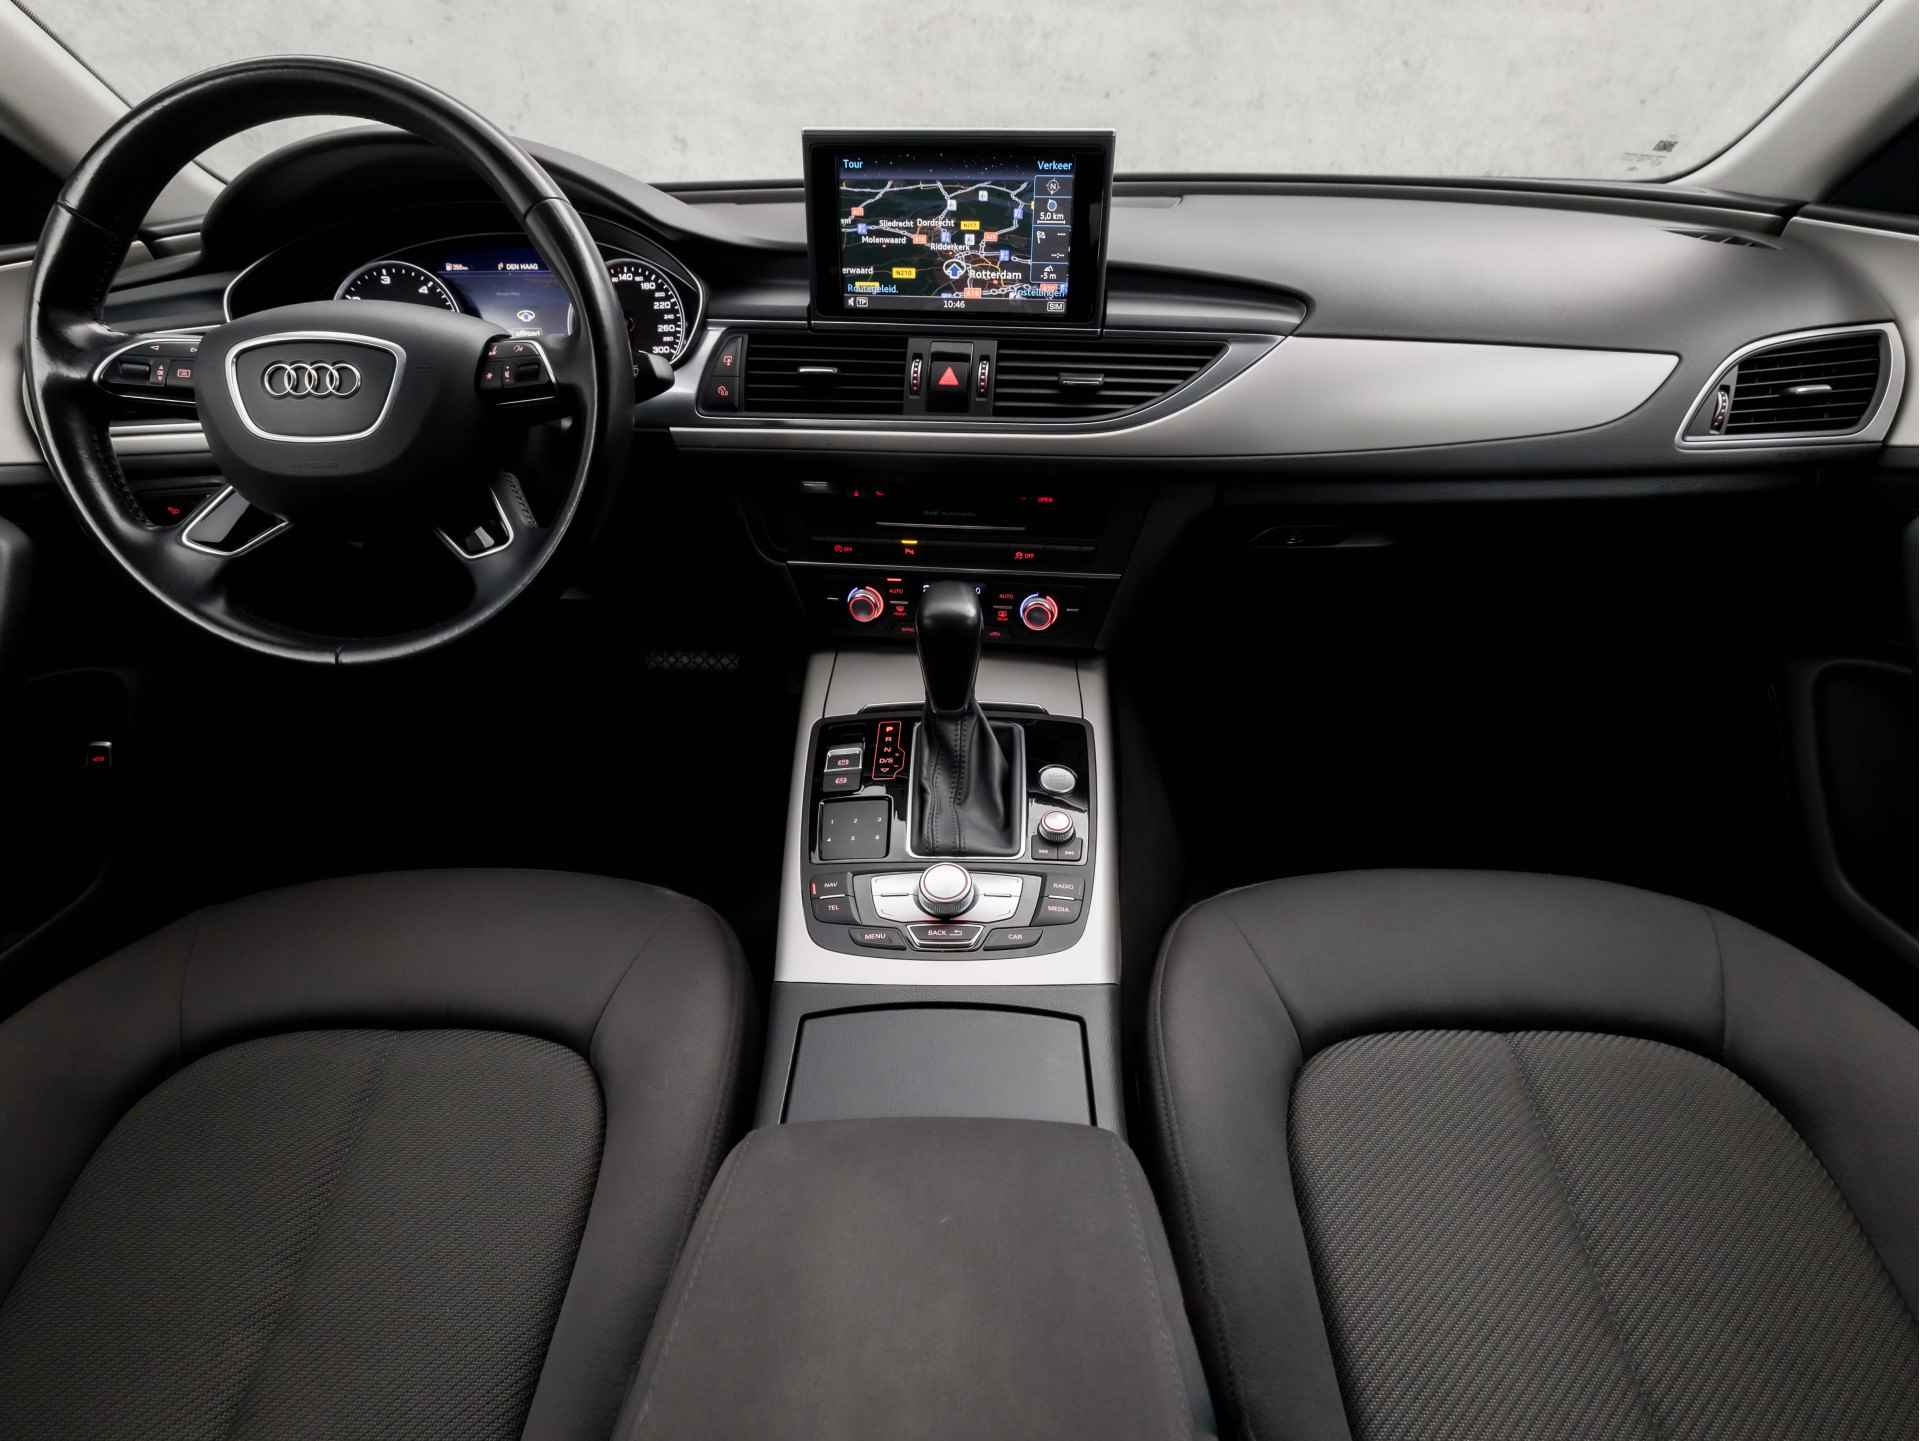 Audi A6 Limousine 2.0 TDI Luxury 191Pk Automaat (GROOT NAVI, CLIMATE, XENON, PARKEERSENSOREN, SPORTSTOELEN, KEYLESS START, CRUISE, NIEUWSTAAT) - 6/40